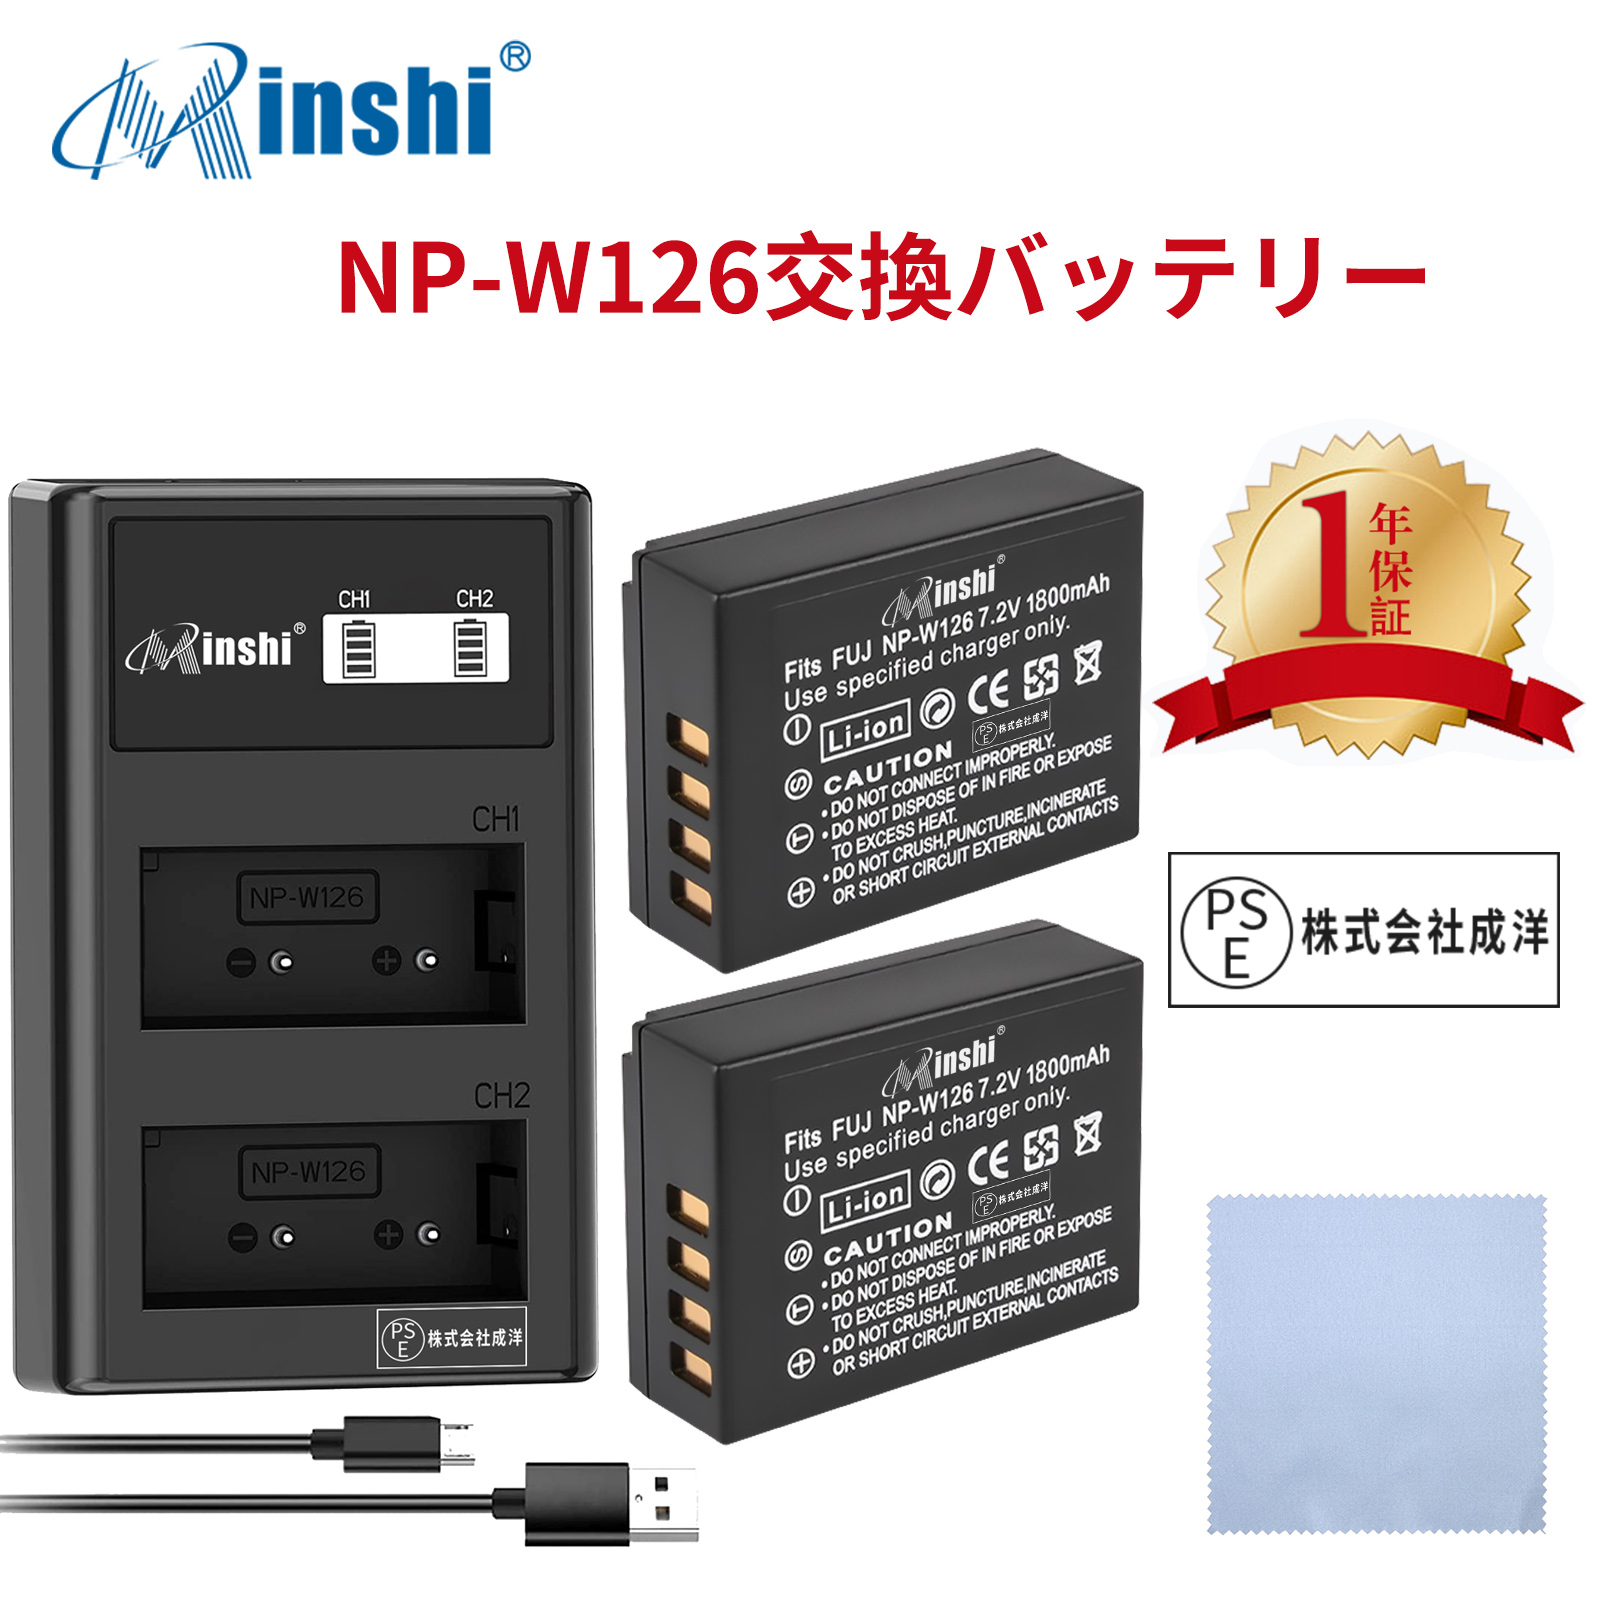 【セット】minshi FUJIFILM X-T10 NP-W126S 【1800mAh 7.2V】 NP-W126 NP-W126S高品質 NP-W126S NP-W126互換バッテリー【2個】